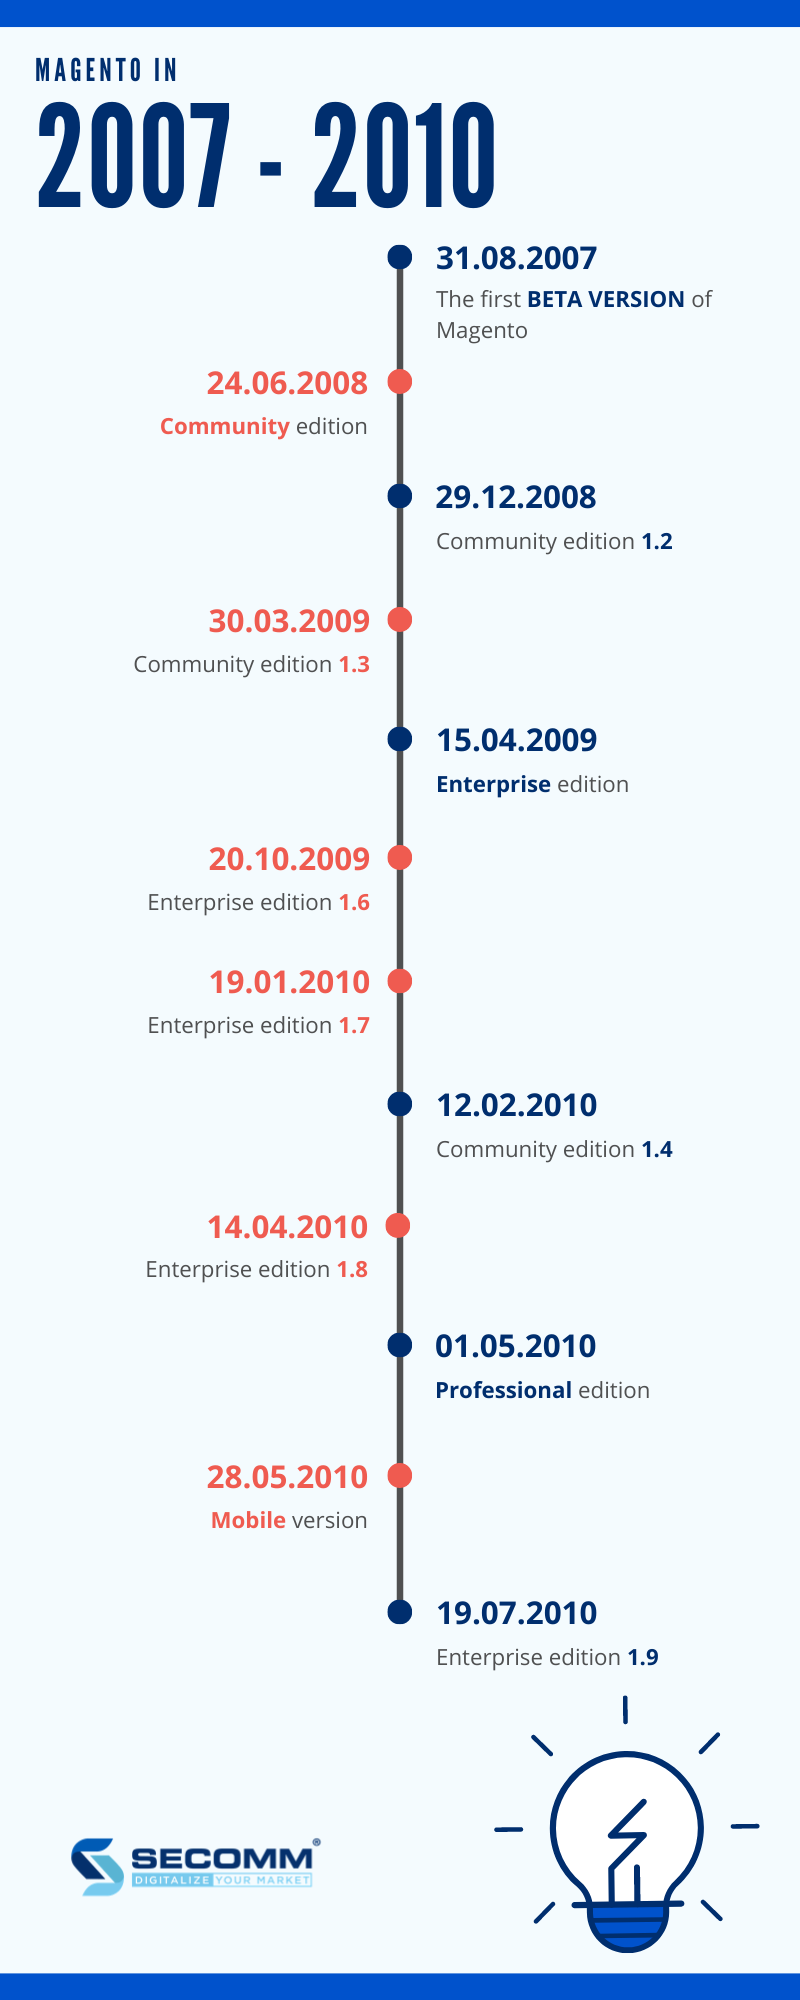 Magento timeline 2007 - 2010. Lược sử Magento 1